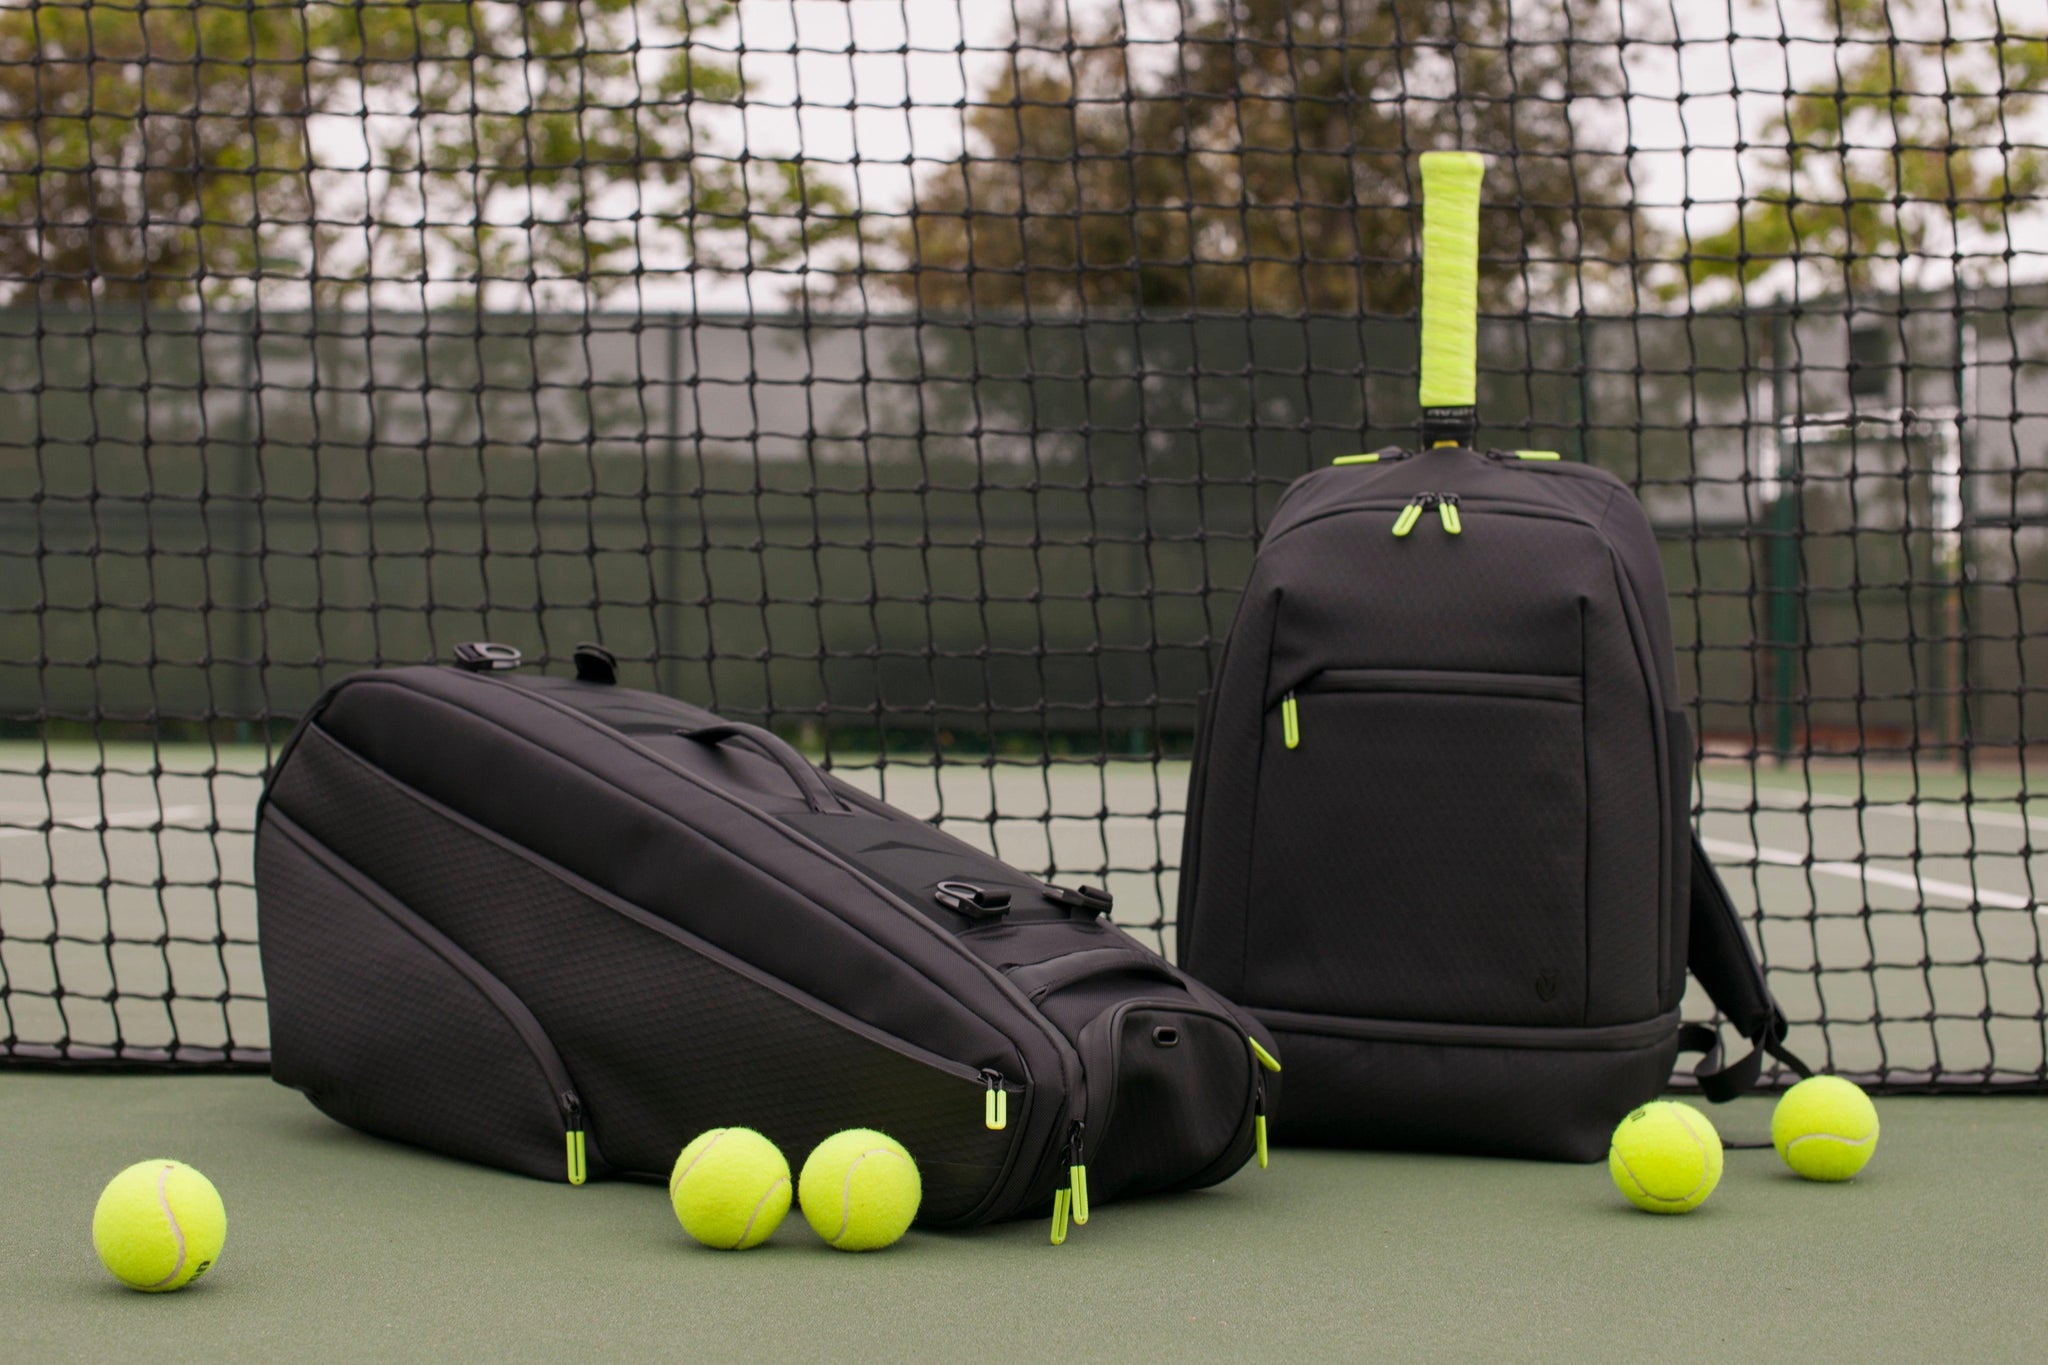 Tennis Tote Bag, Tennis Racket Bag, Pickleball Tote Bag - China